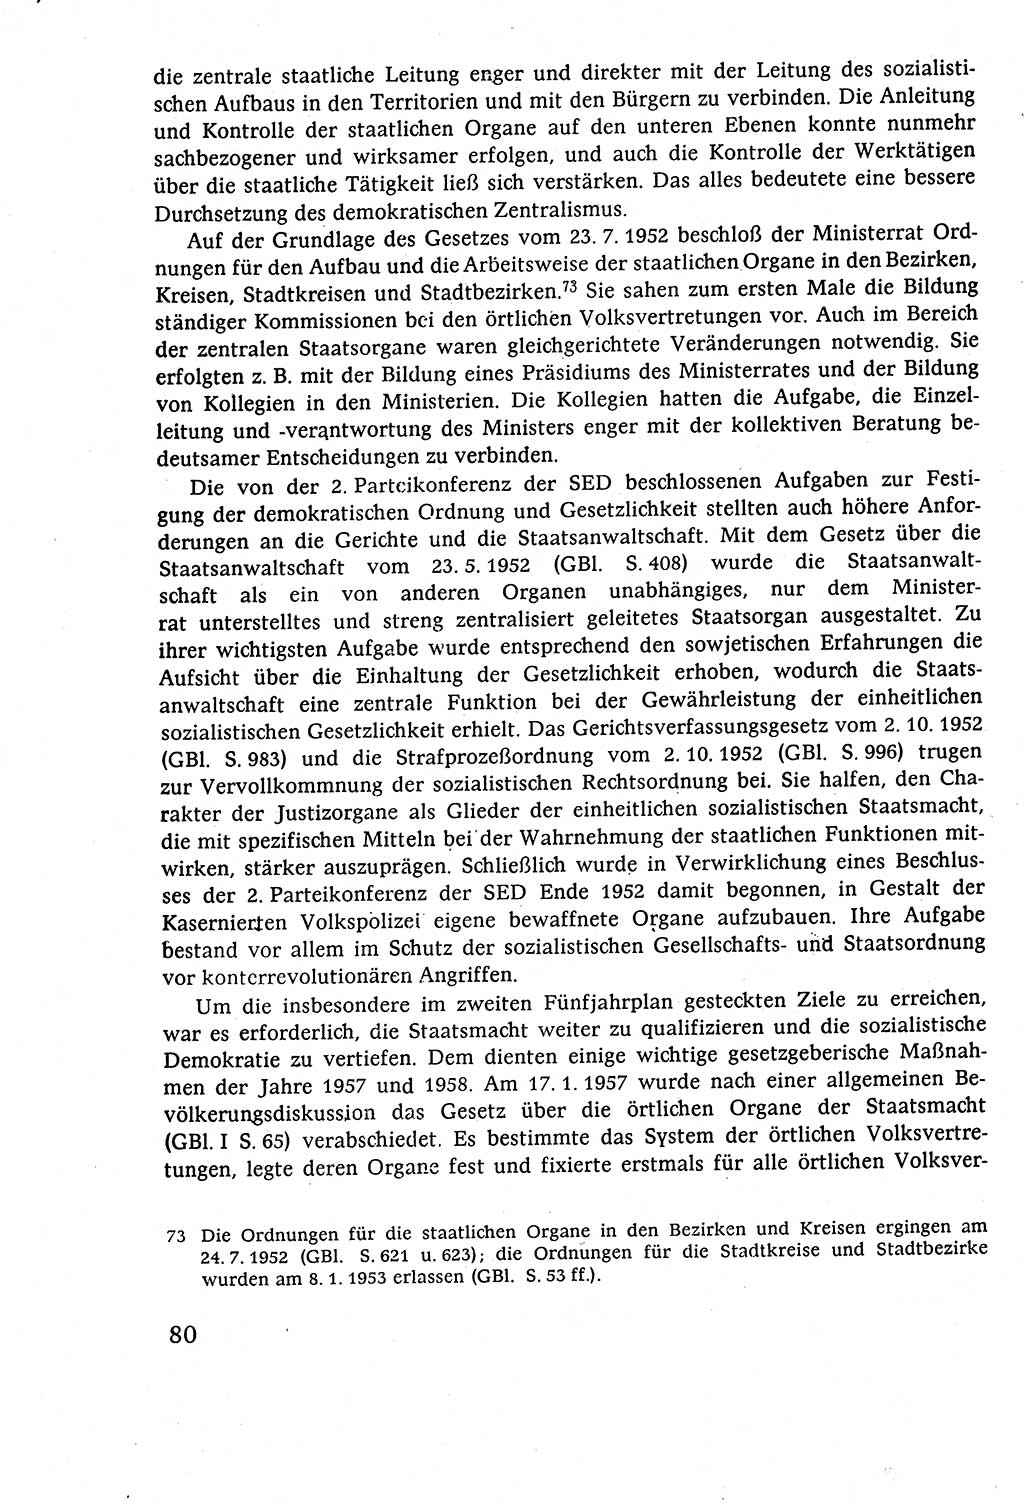 Staatsrecht der DDR (Deutsche Demokratische Republik), Lehrbuch 1977, Seite 80 (St.-R. DDR Lb. 1977, S. 80)